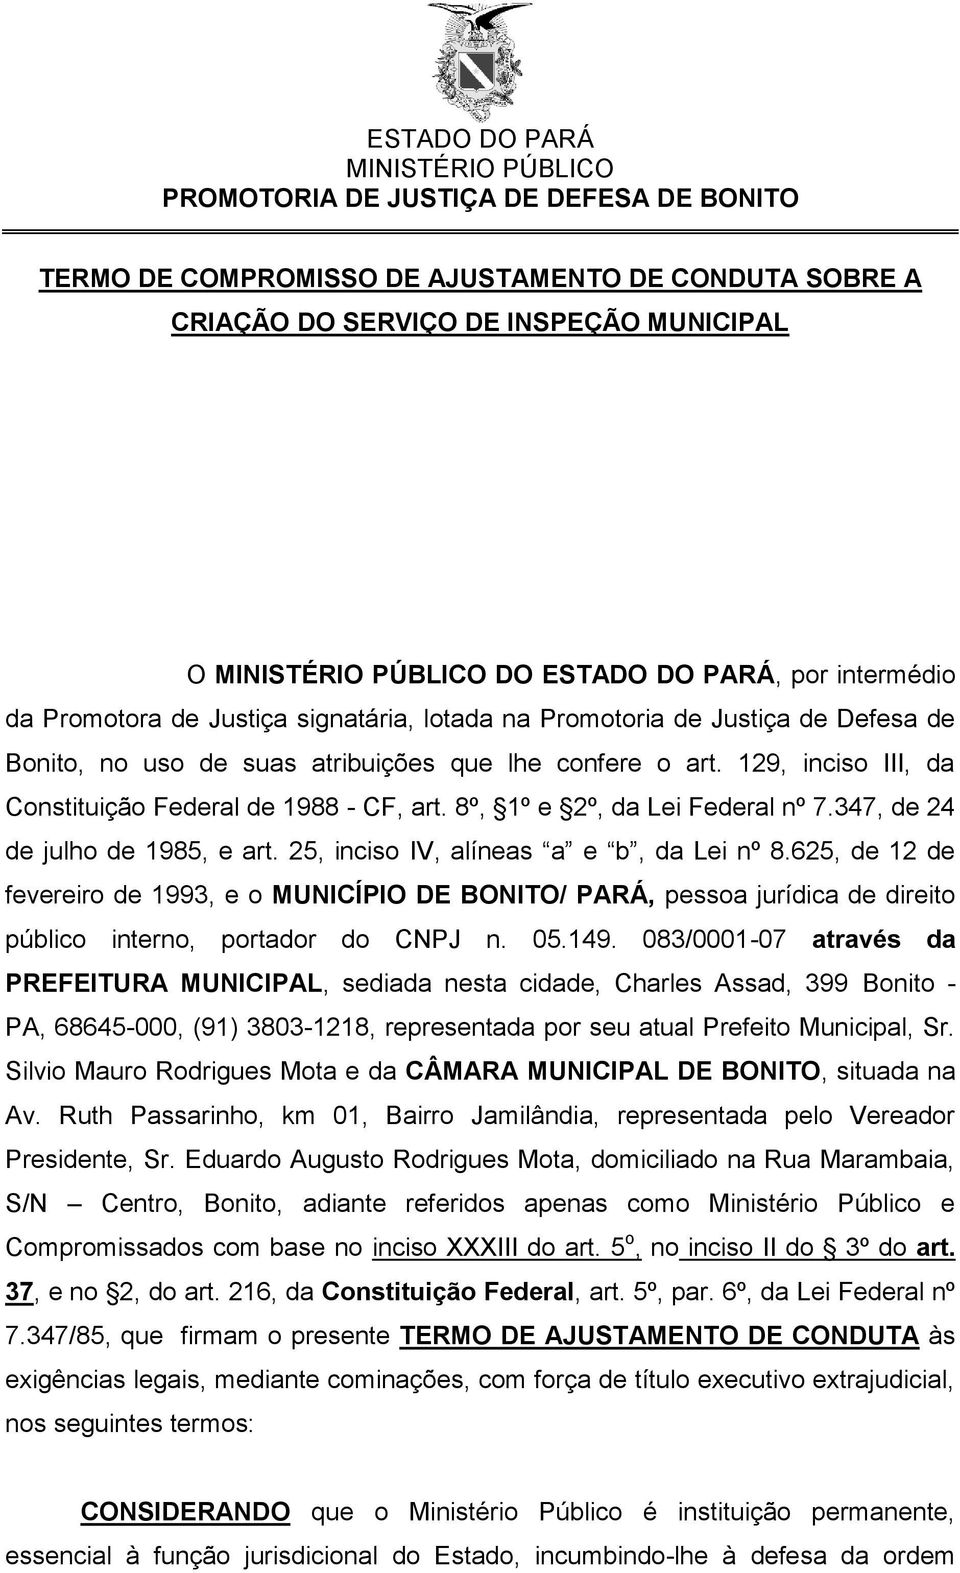 25, inciso IV, alíneas a e b, da Lei nº 8.625, de 12 de fevereiro de 1993, e o MUNICÍPIO DE BONITO/ PARÁ, pessoa jurídica de direito público interno, portador do CNPJ n. 05.149.